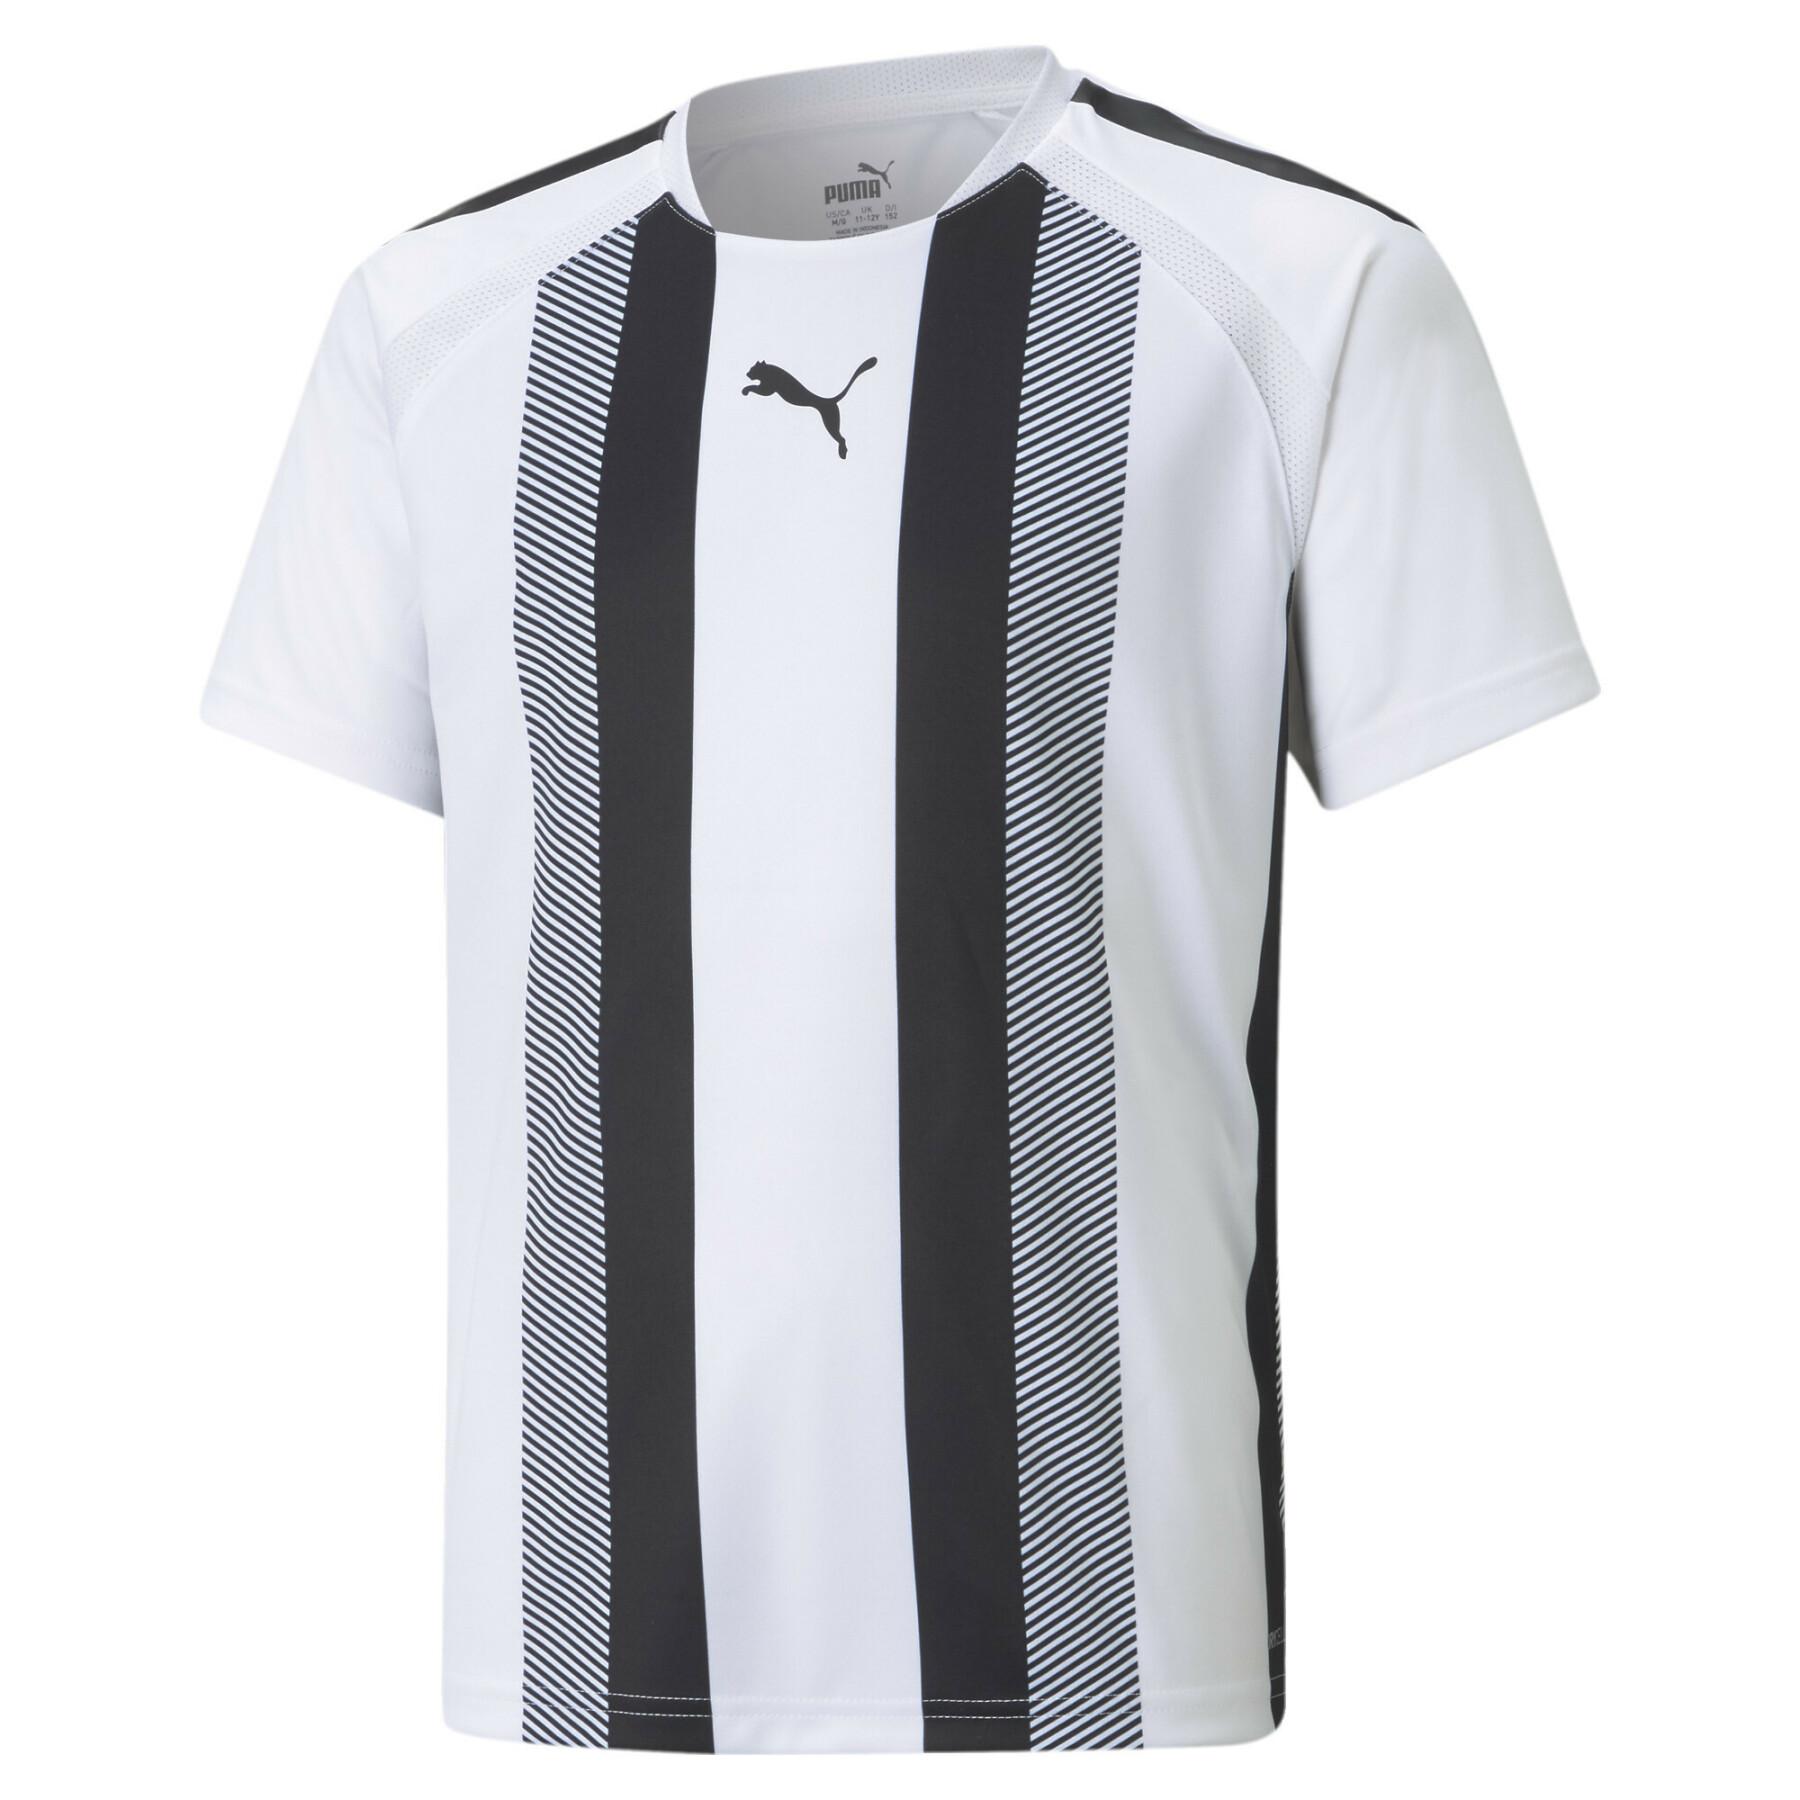 Camiseta niños Puma Team Liga Striped